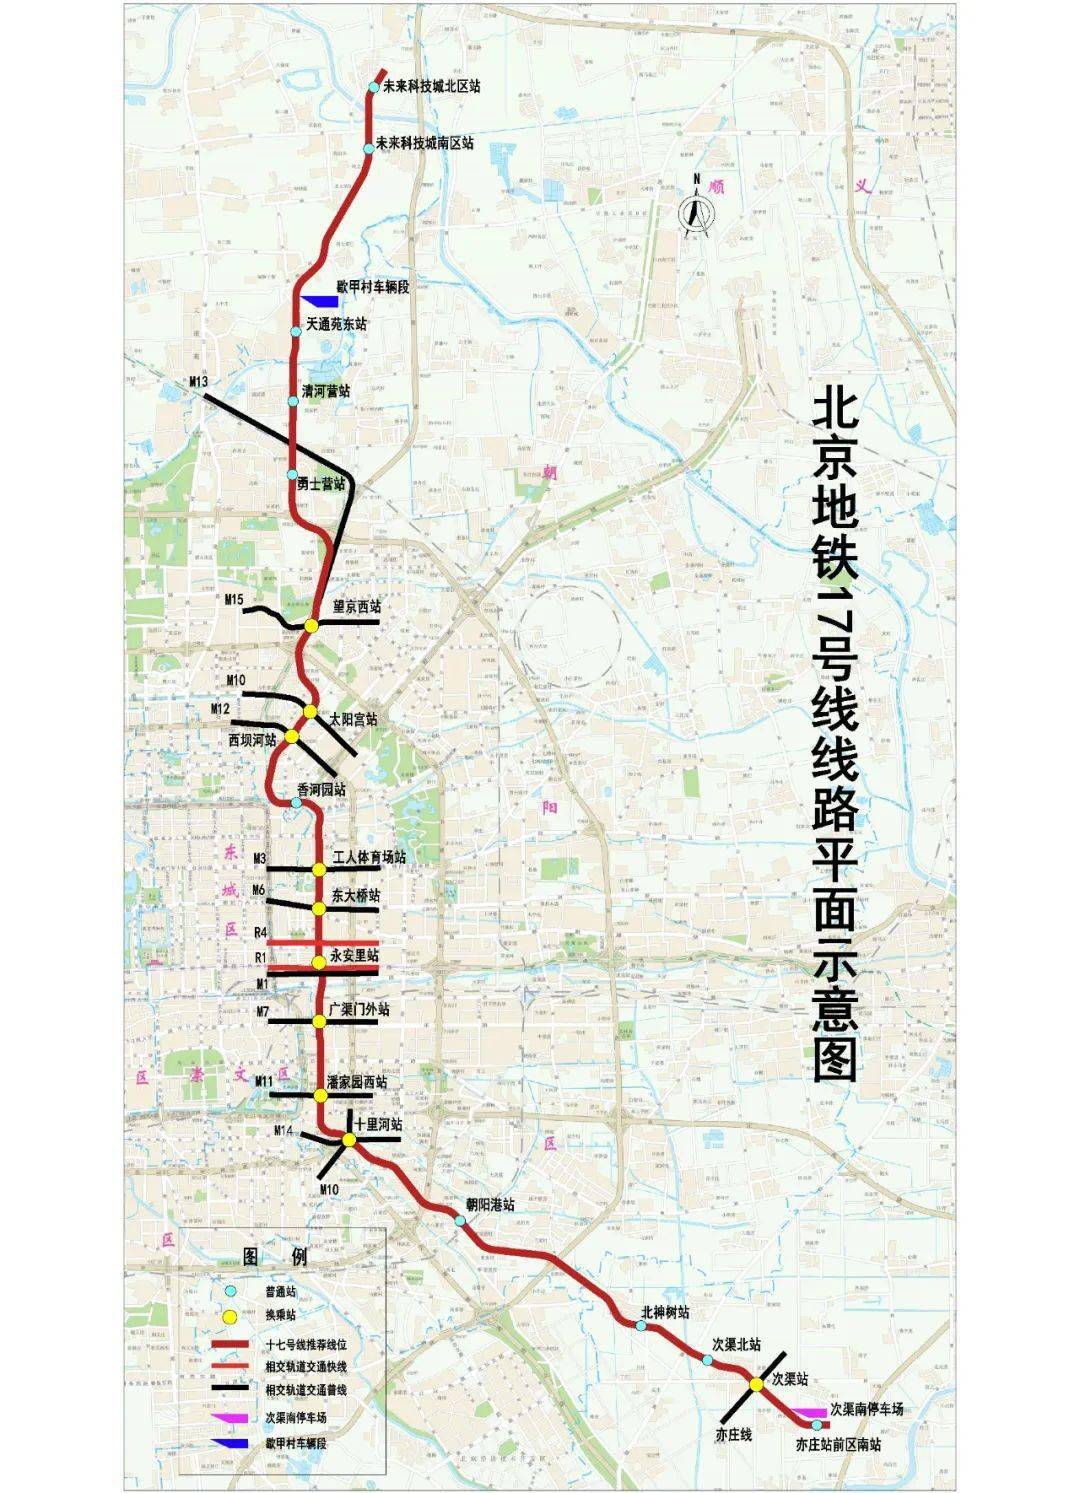 2米达到3米. 地铁17号线线路图/市轨道公司提供